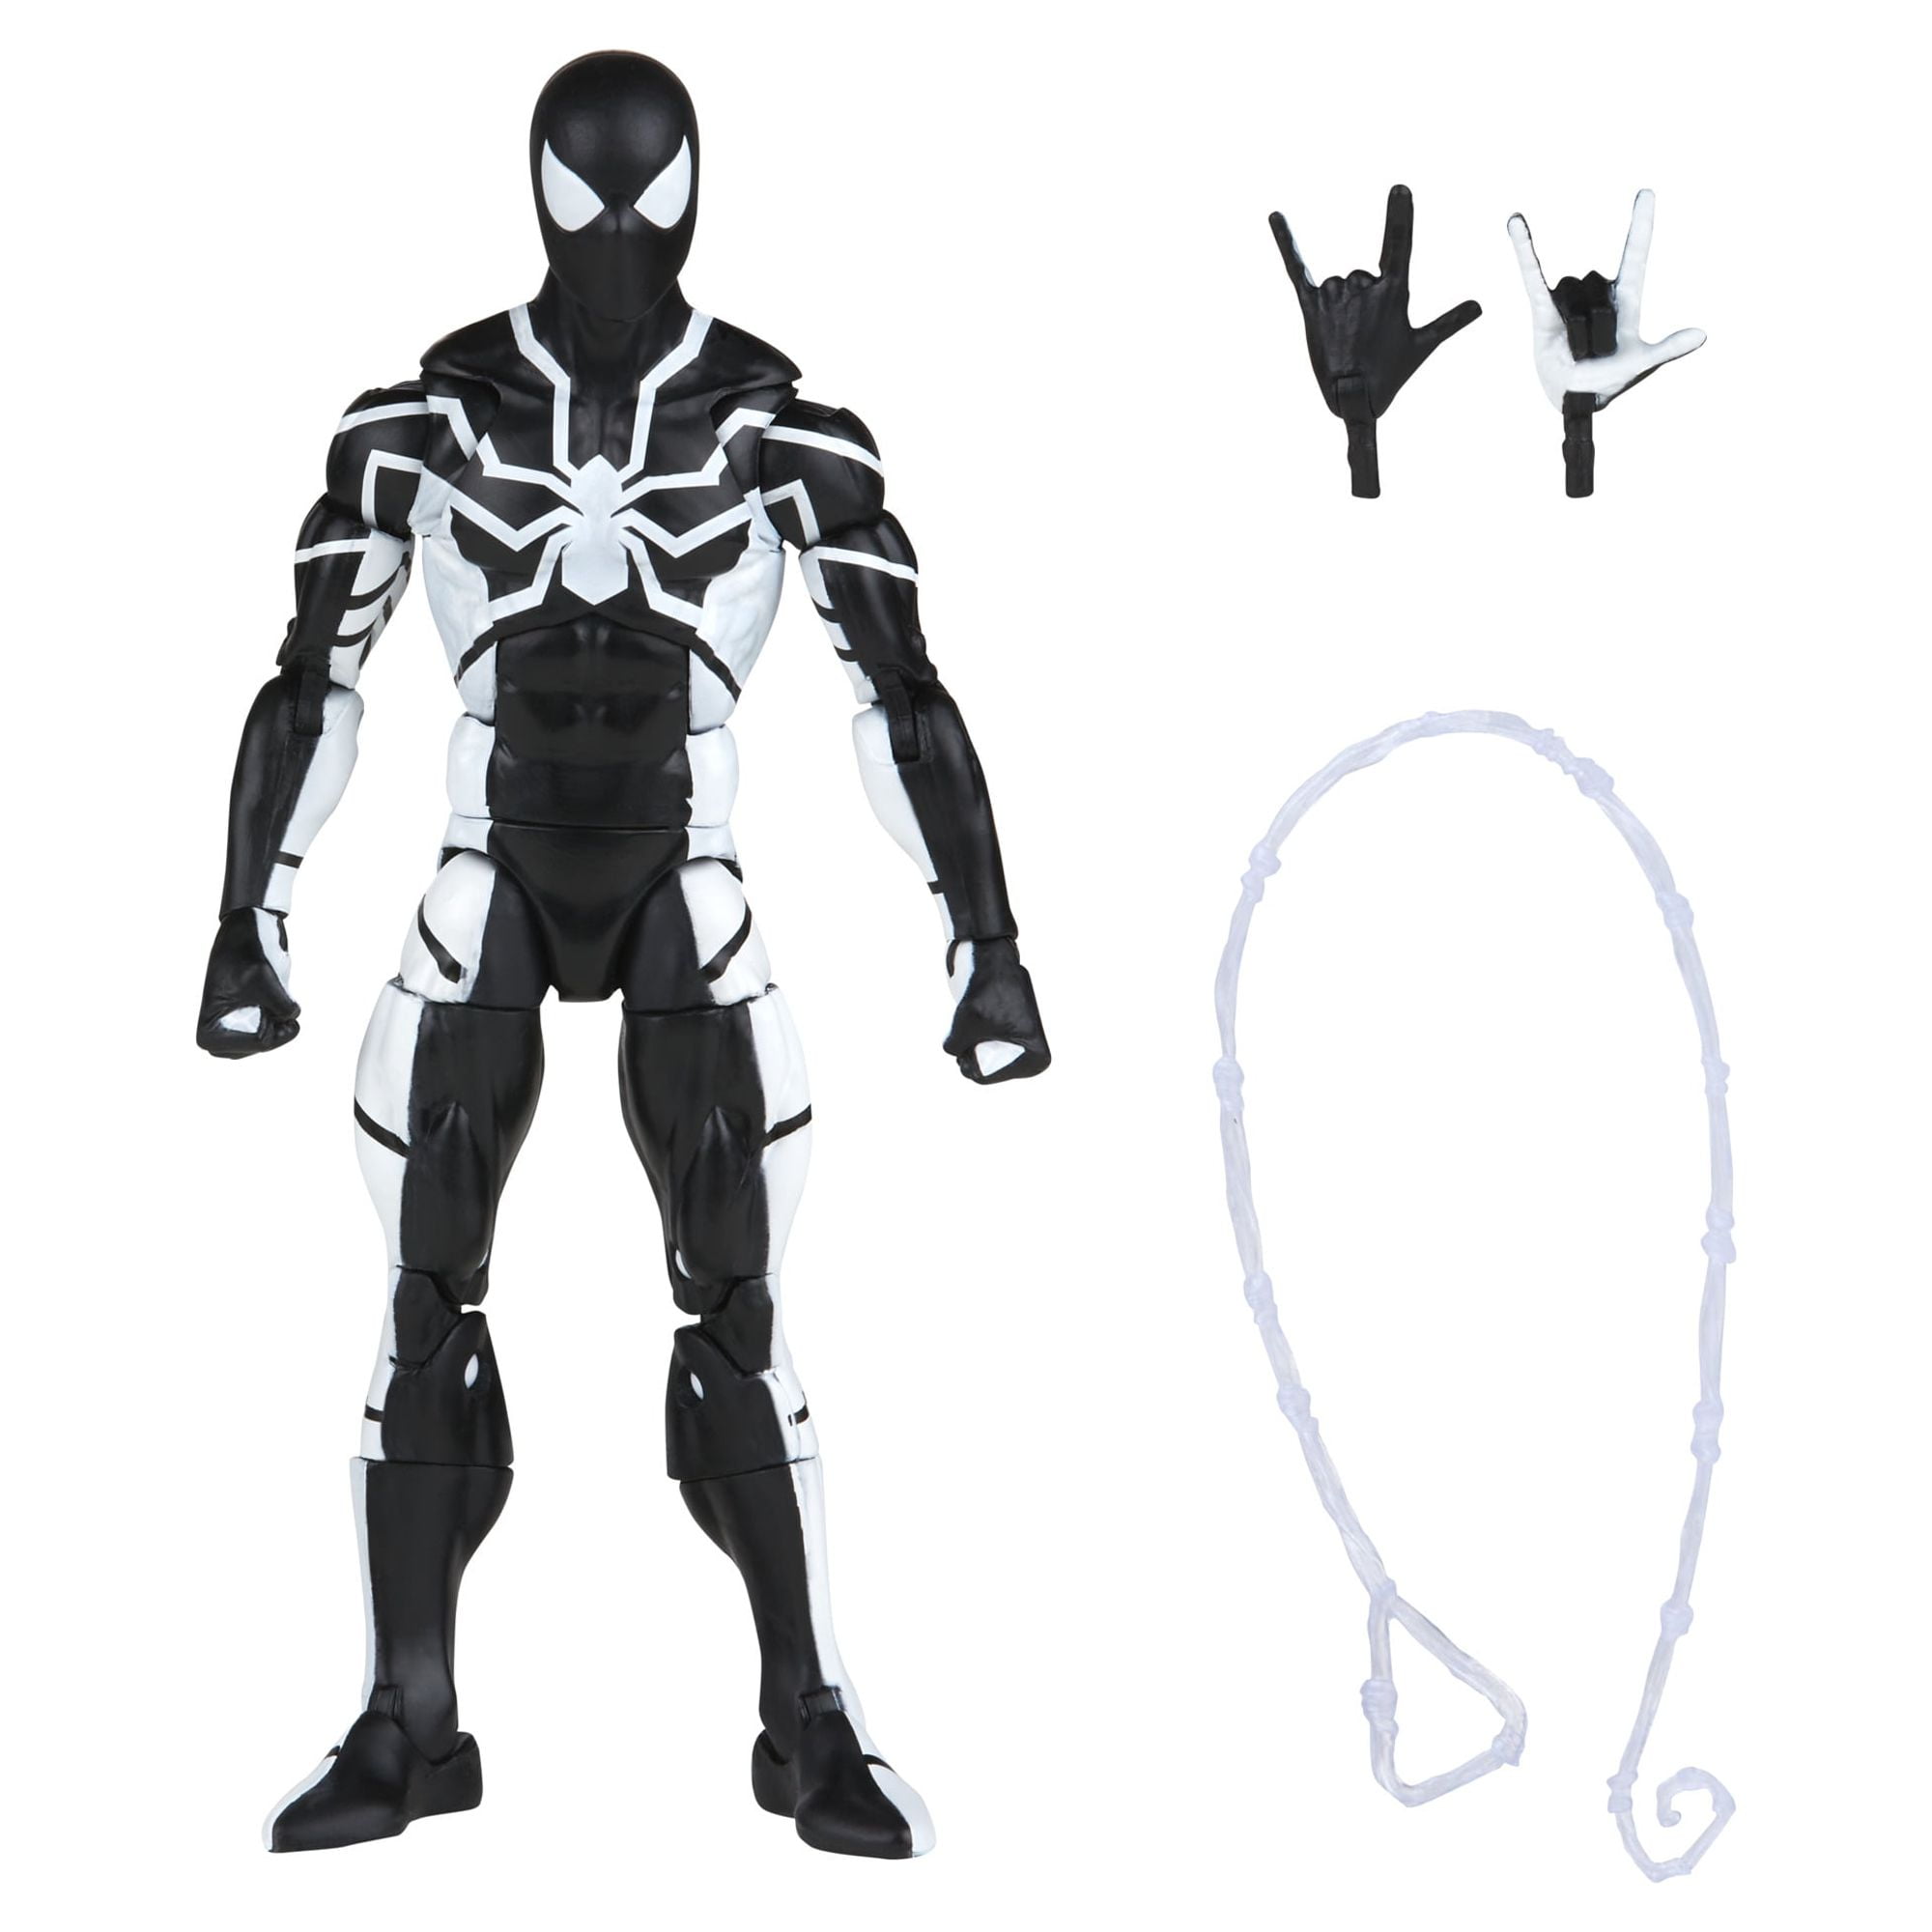 Spiderman Stealth Suit - SHVR by SSingh511 on DeviantArt